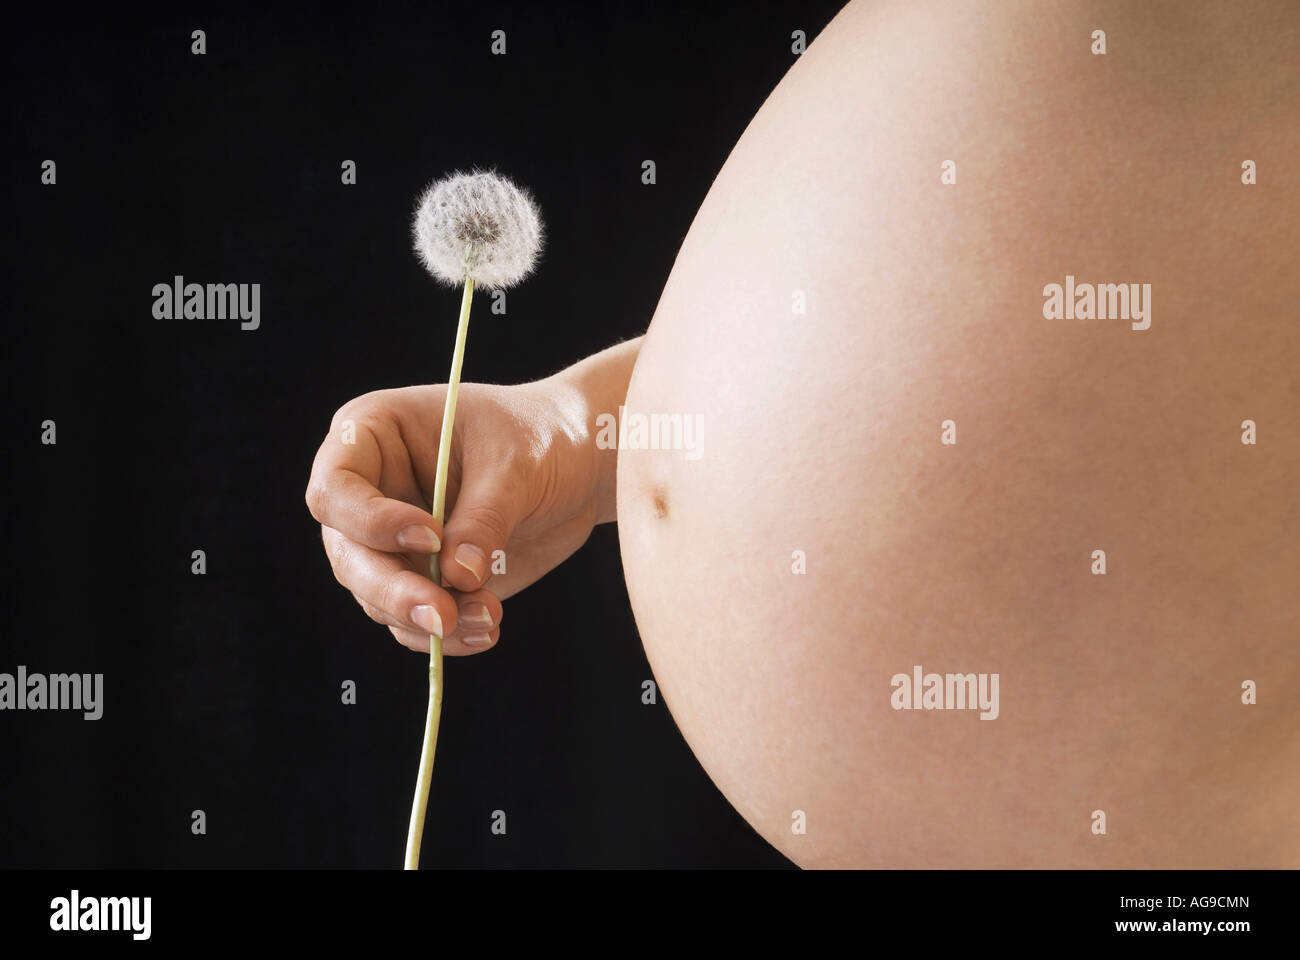 Pregnant woman Stock Photo